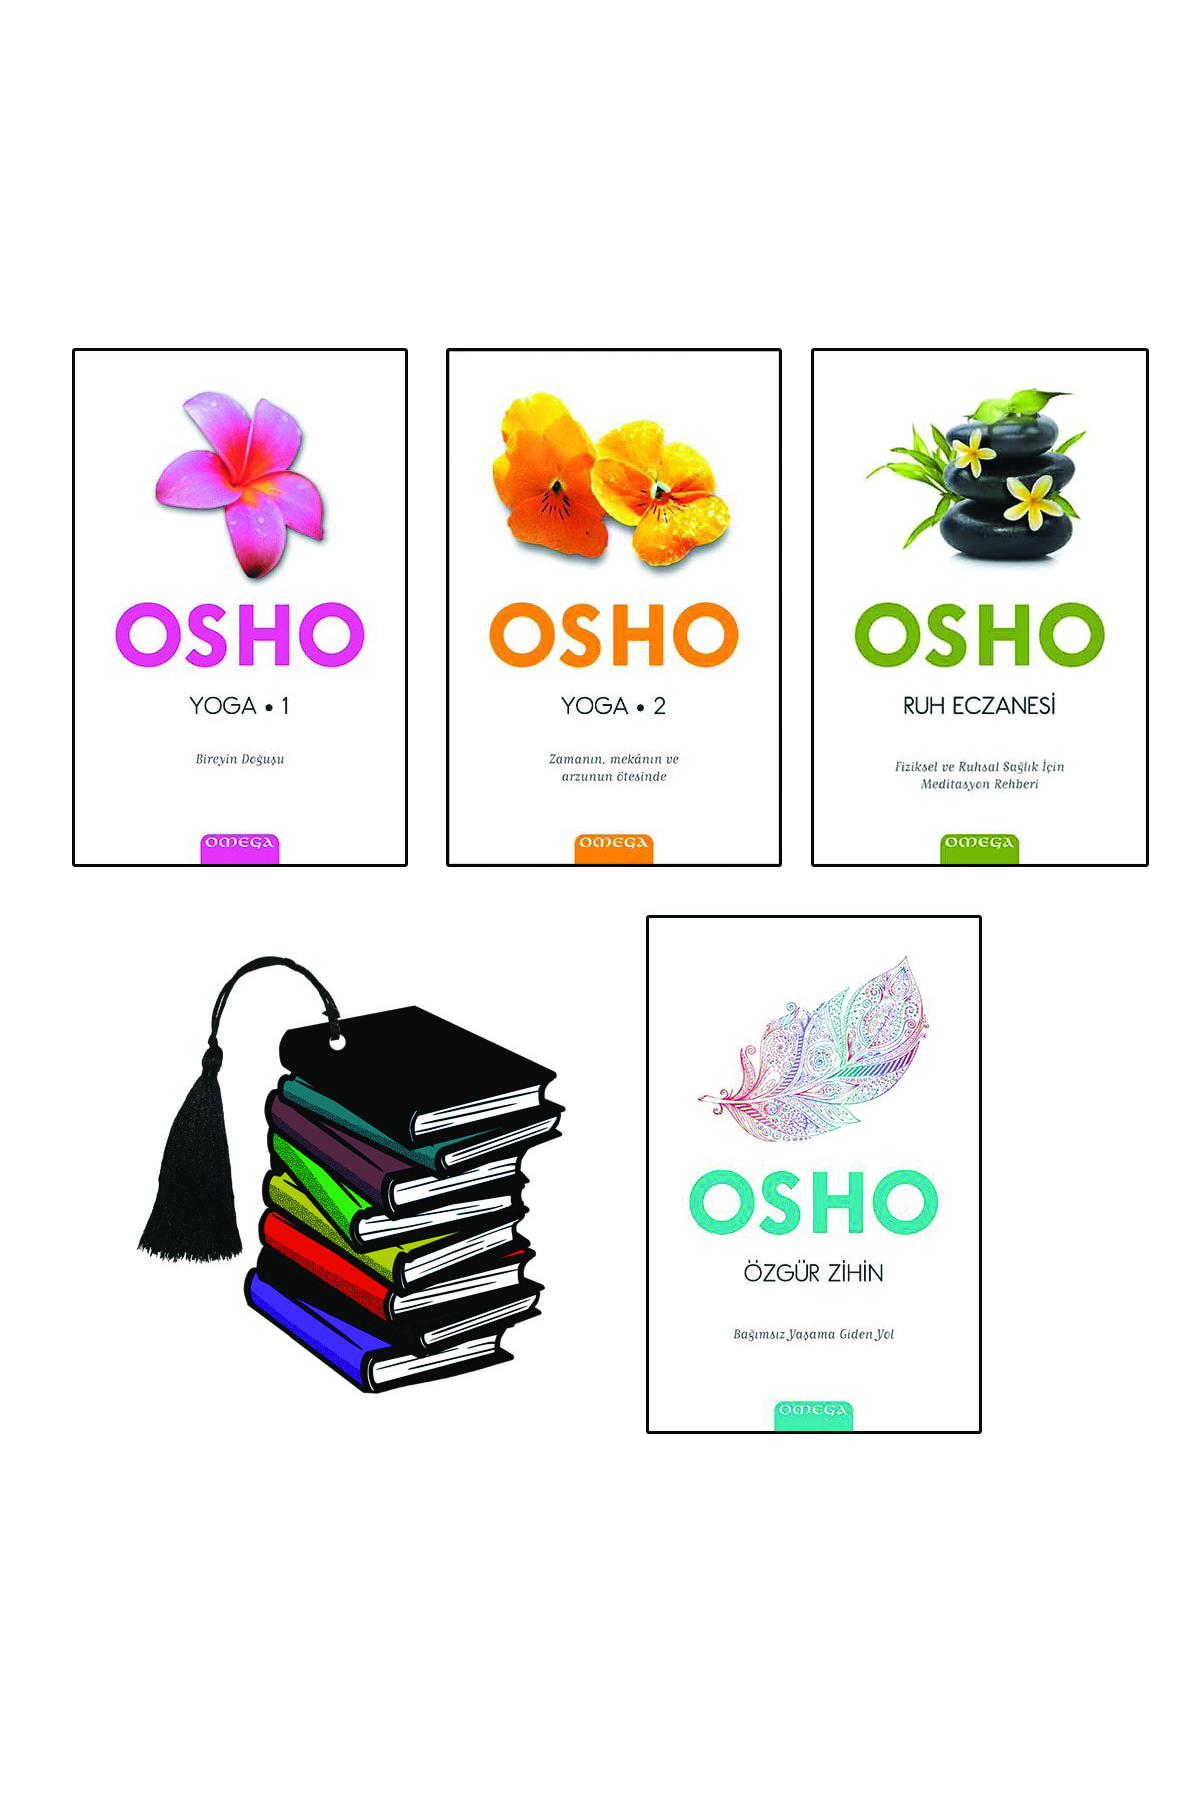 Omega Yayınları Osho - Yoga 1 - Yoga 2 - Ruh Eczanesi - Özgür Zihin - 4 Kitap Set - Yırtılmaz Ayraç Hediye